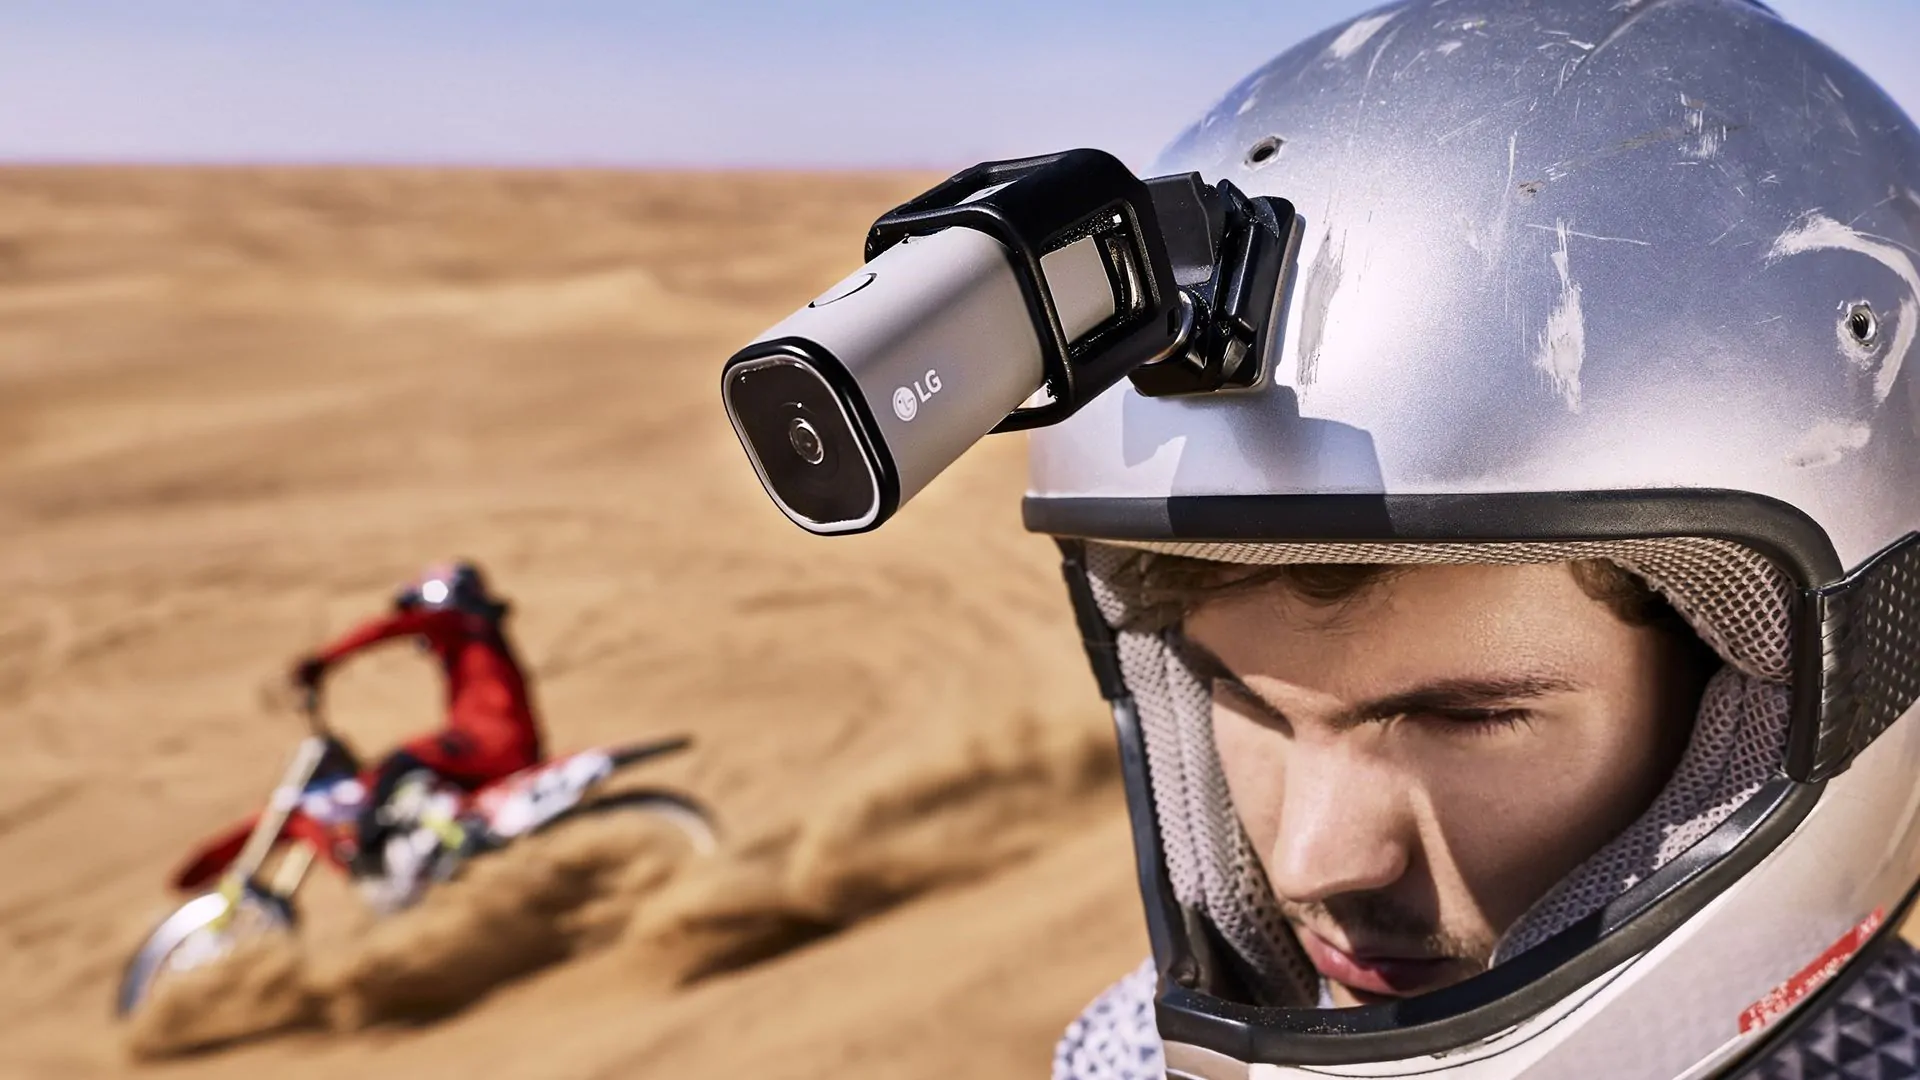 Accessori GoPro: i 10 migliori da acquistare